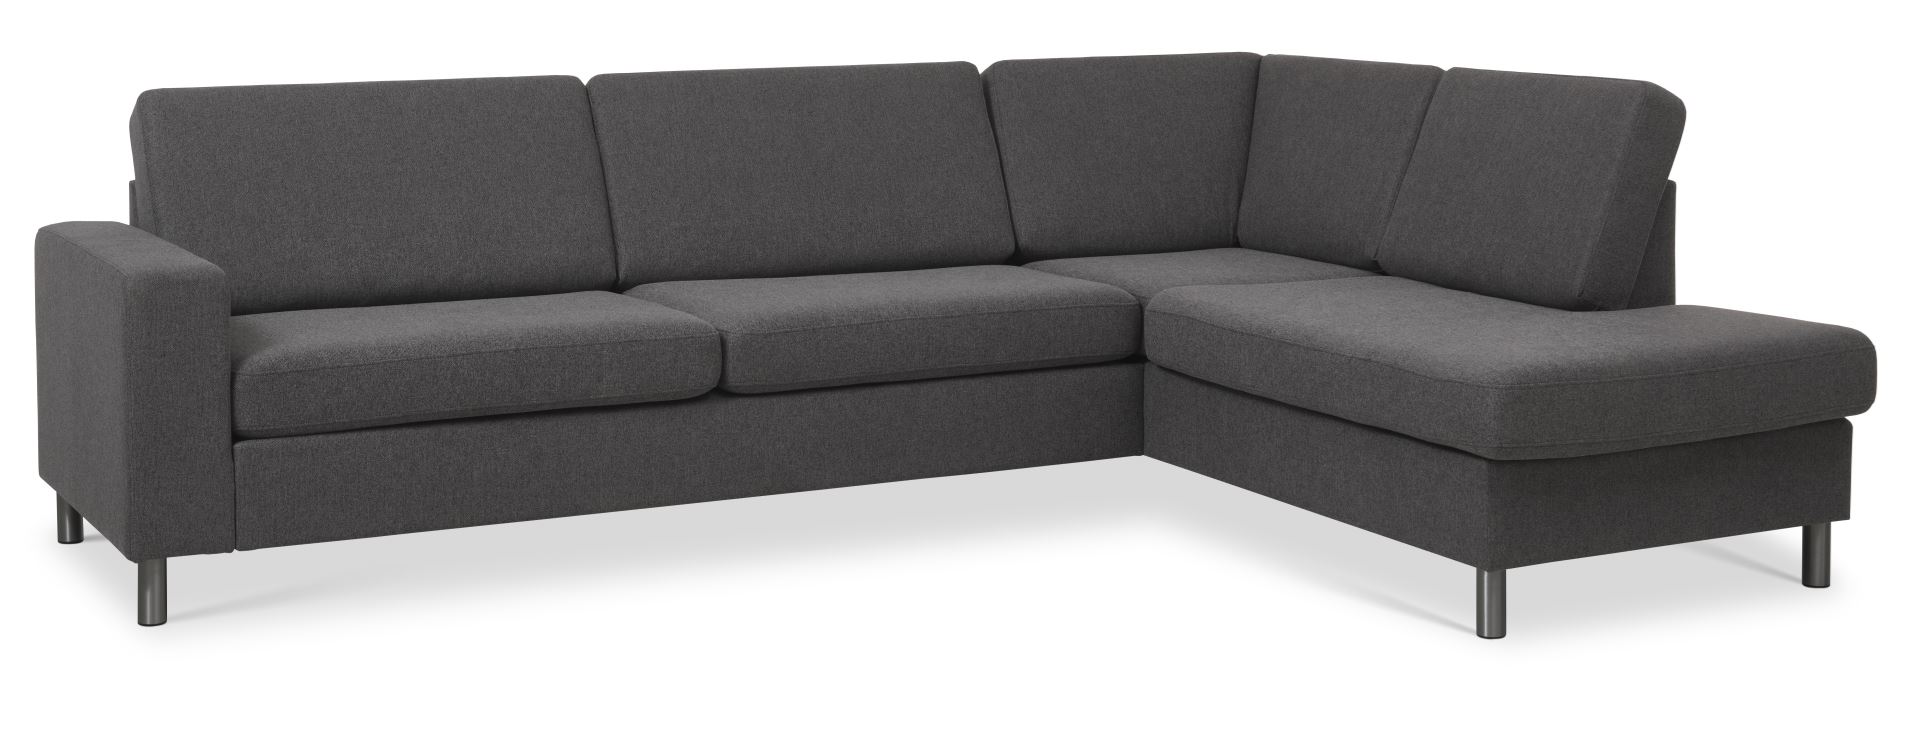 Pan set 3 OE right sofa med chaiselong - antracitgråt polyester stof og børstet aluminium